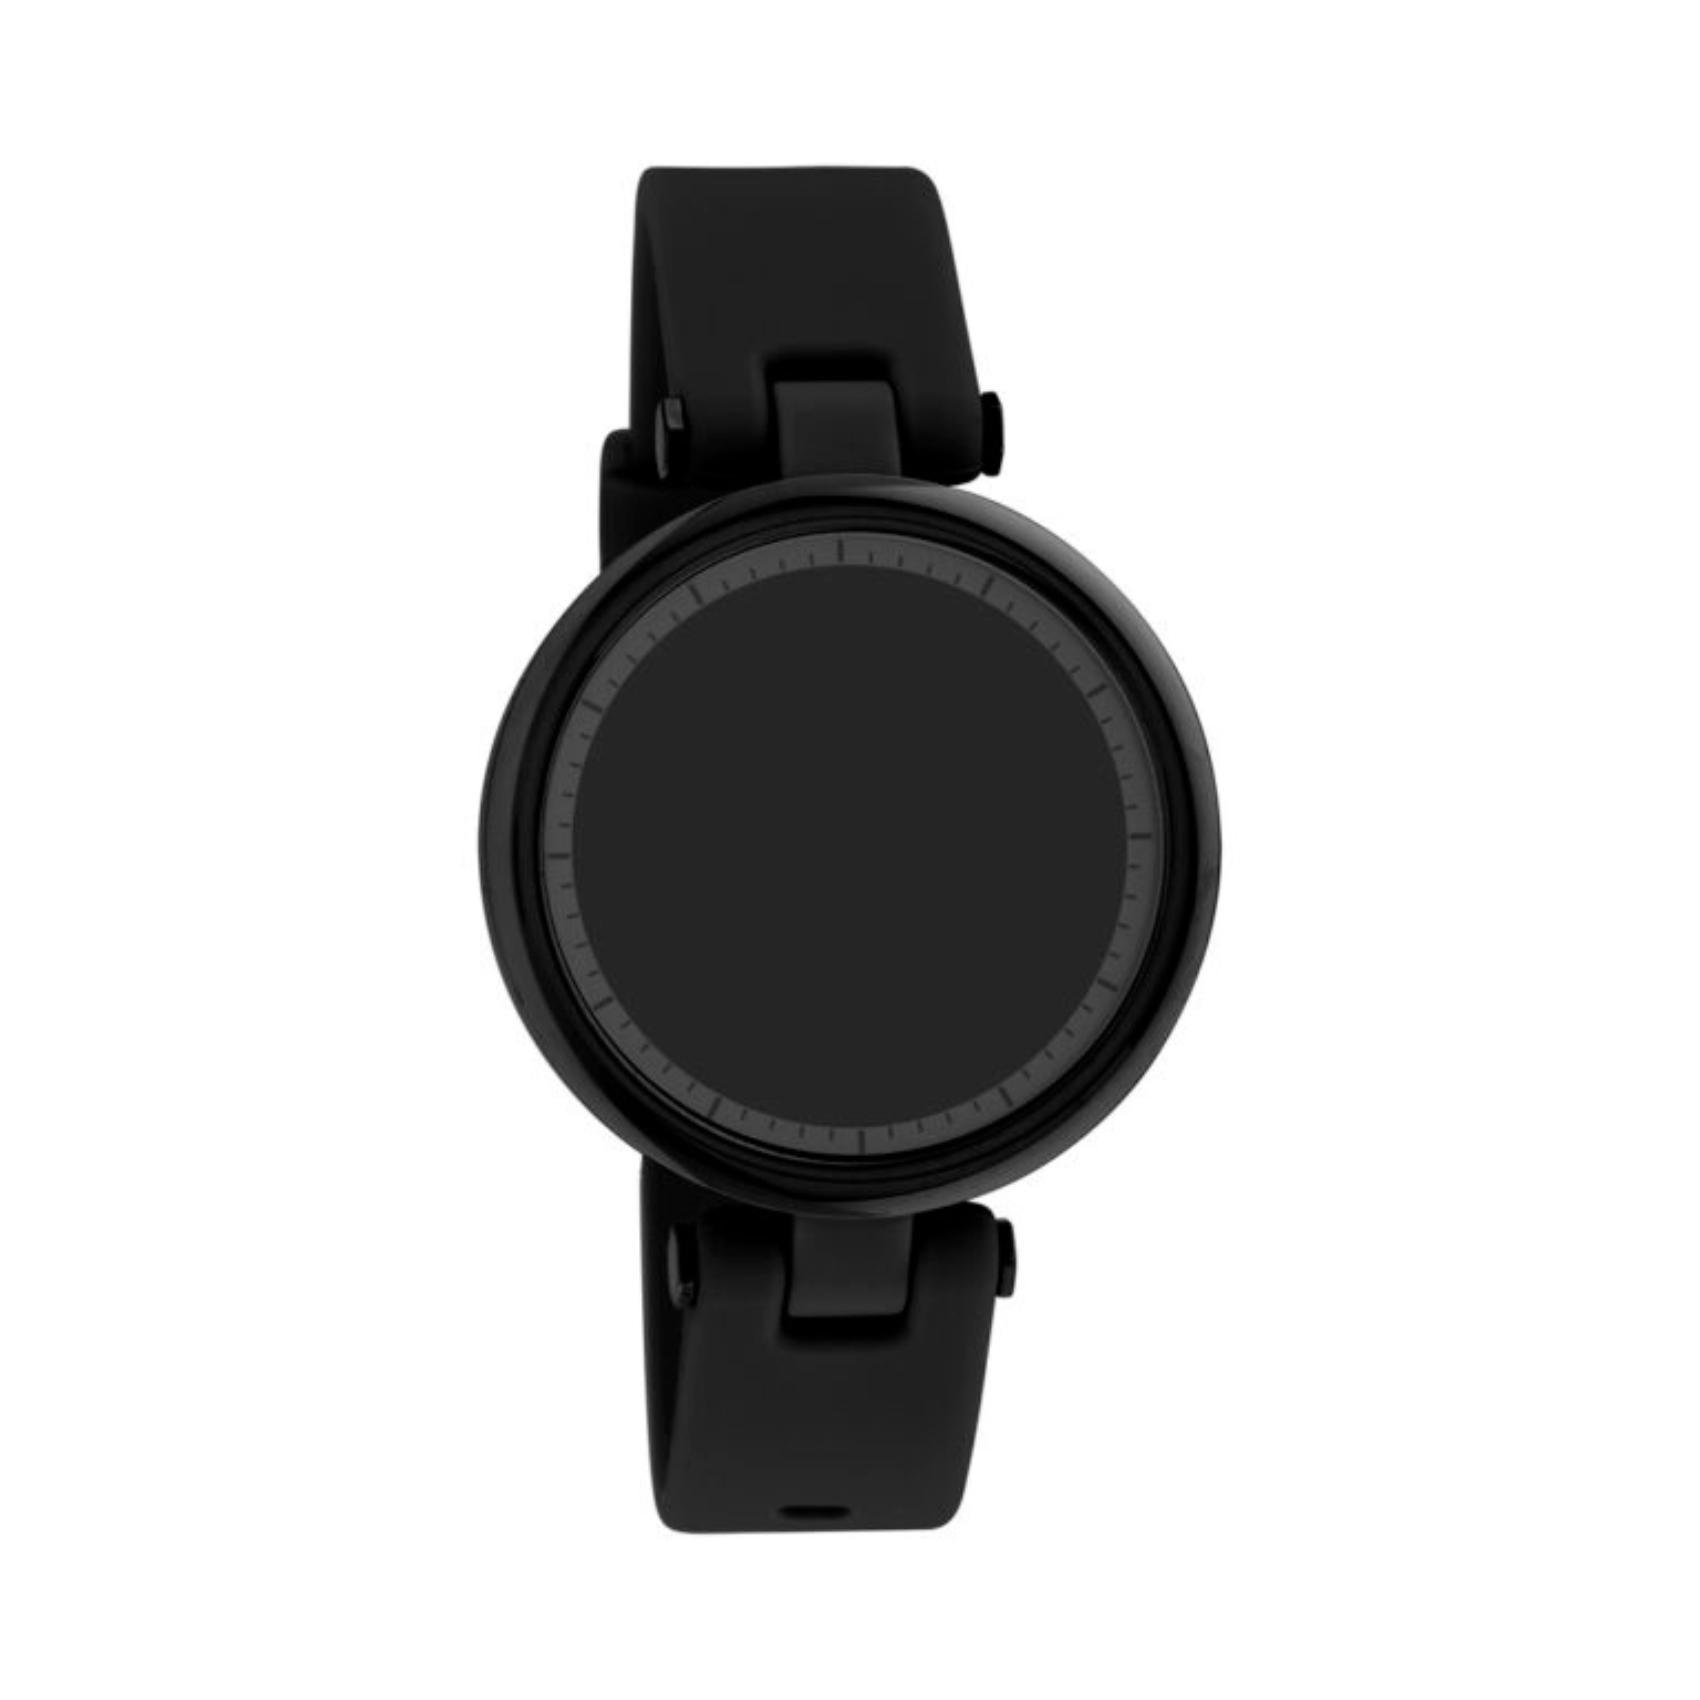 Smartwatch Oozoo Q00407 με μαύρο καουτσούκ λουράκι και μαύρη κάσα.